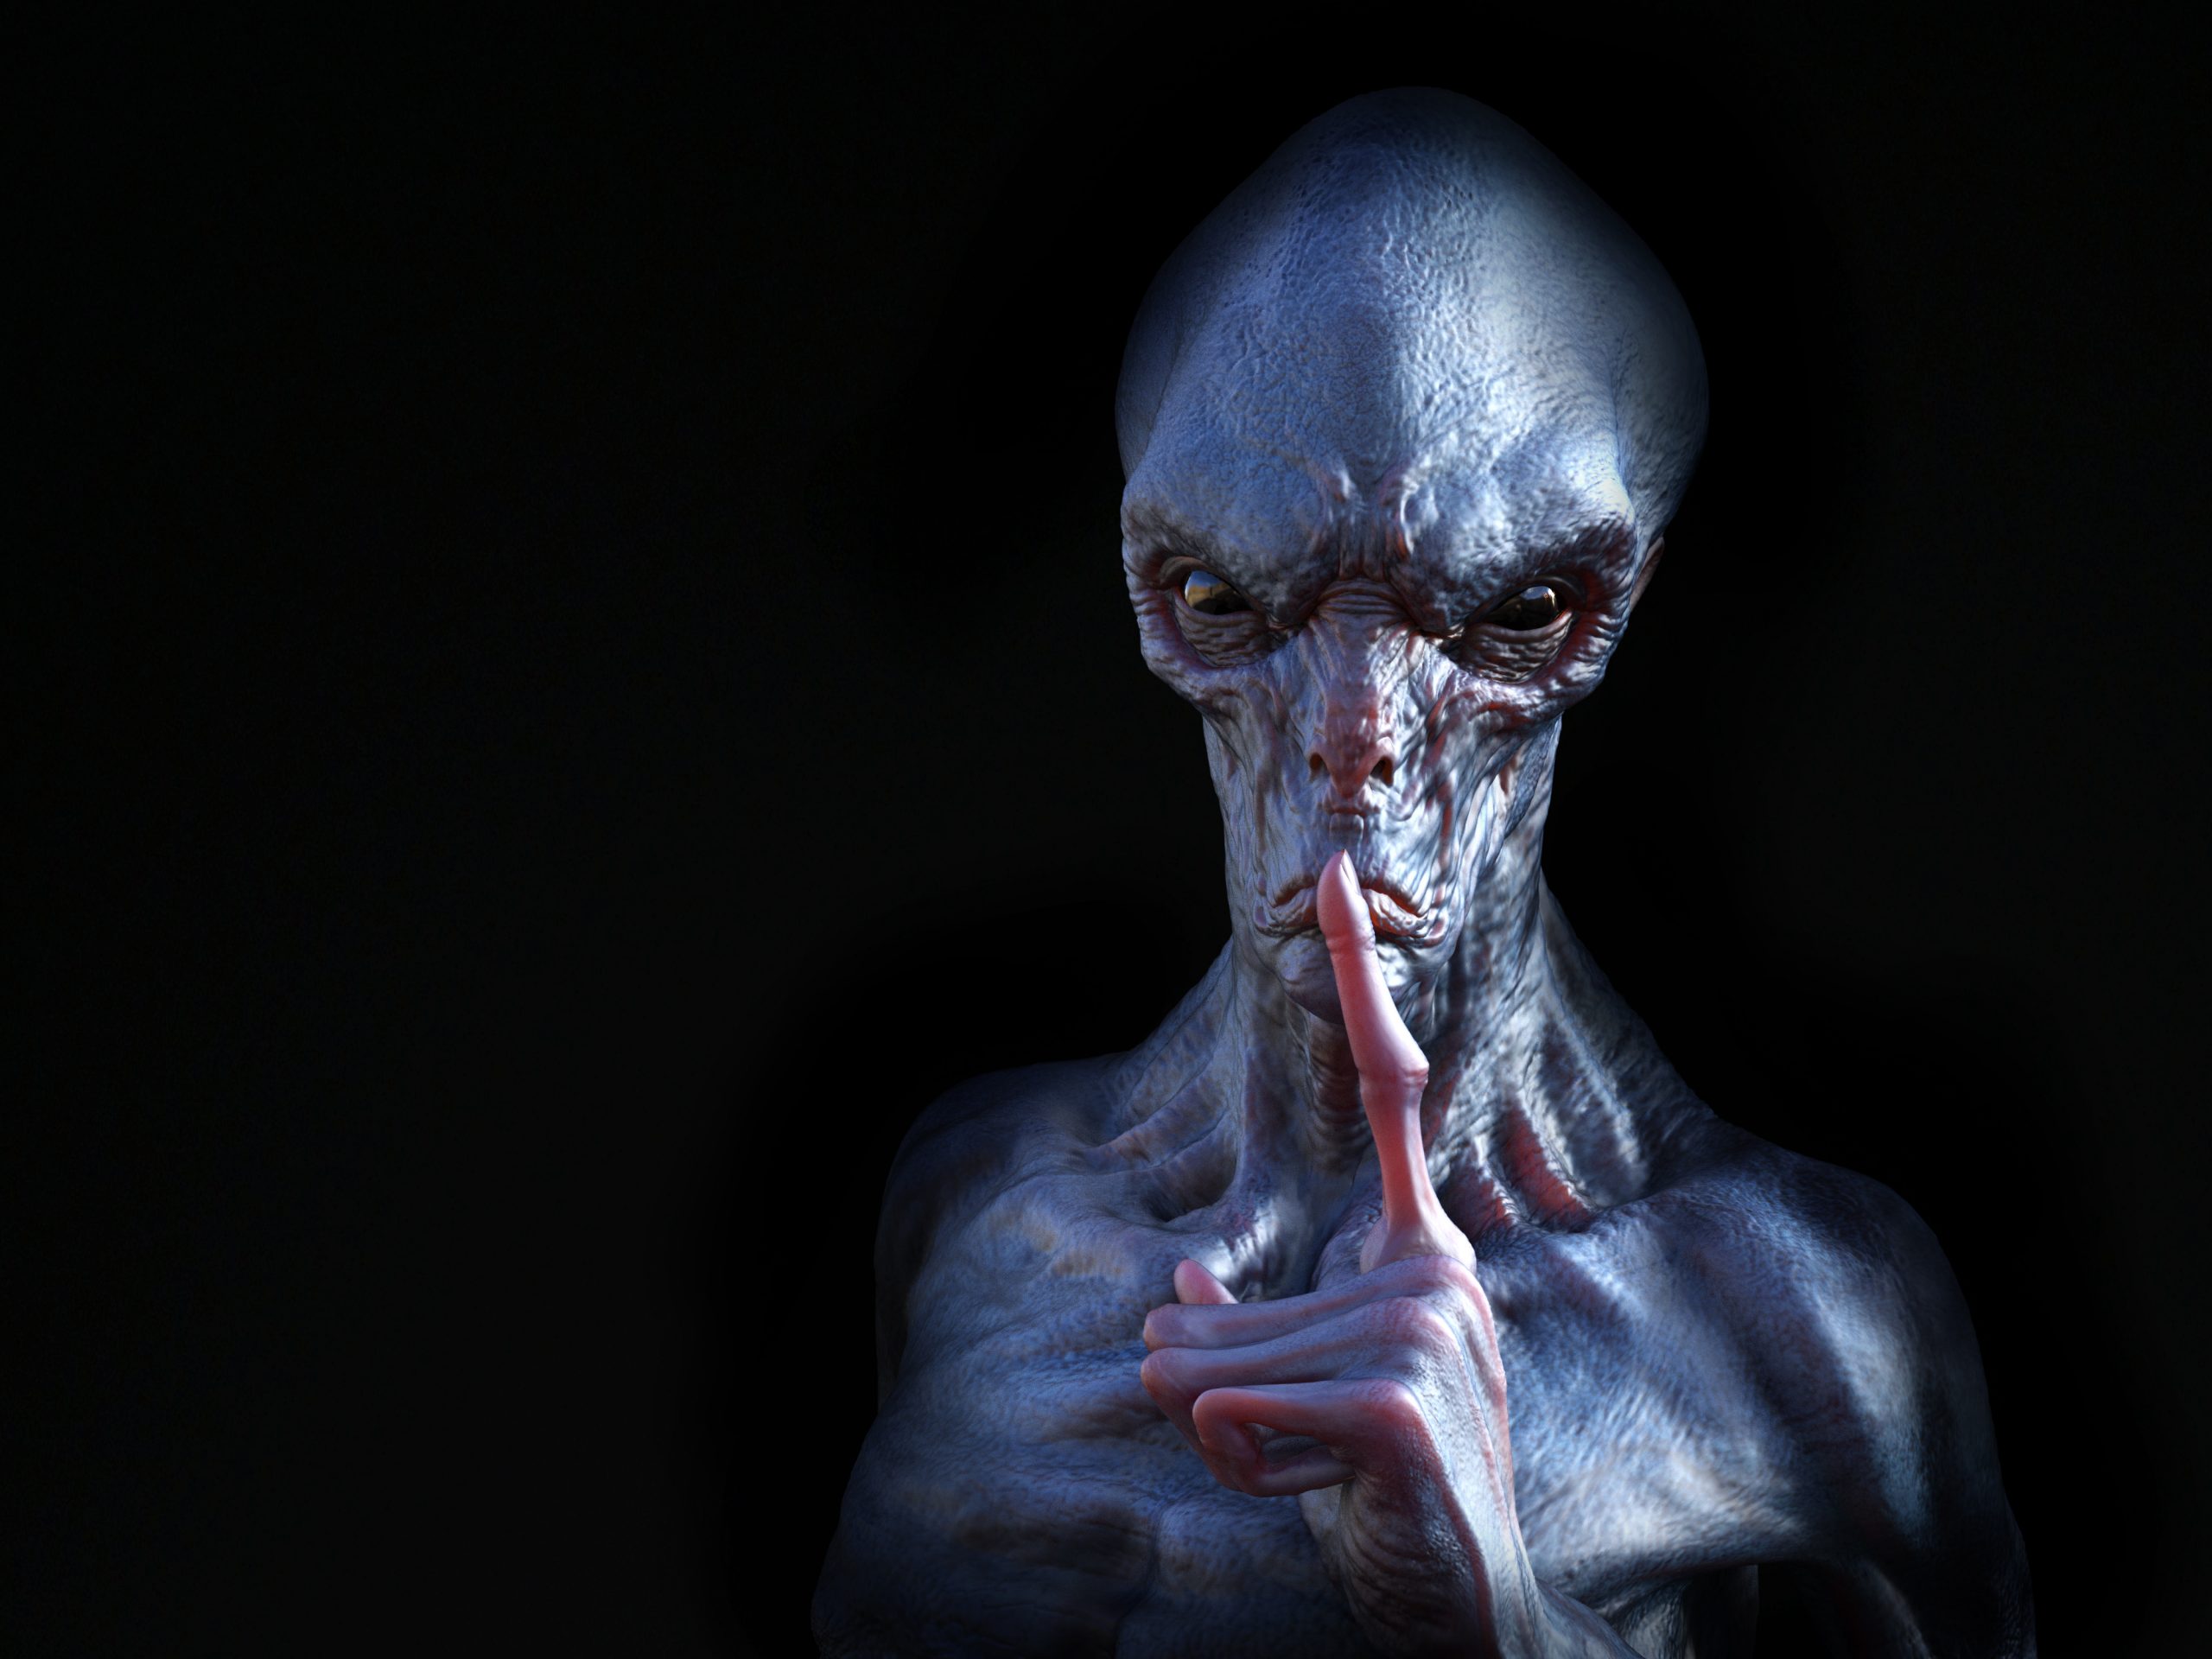 An illustration of an alien being. Depositphotos.